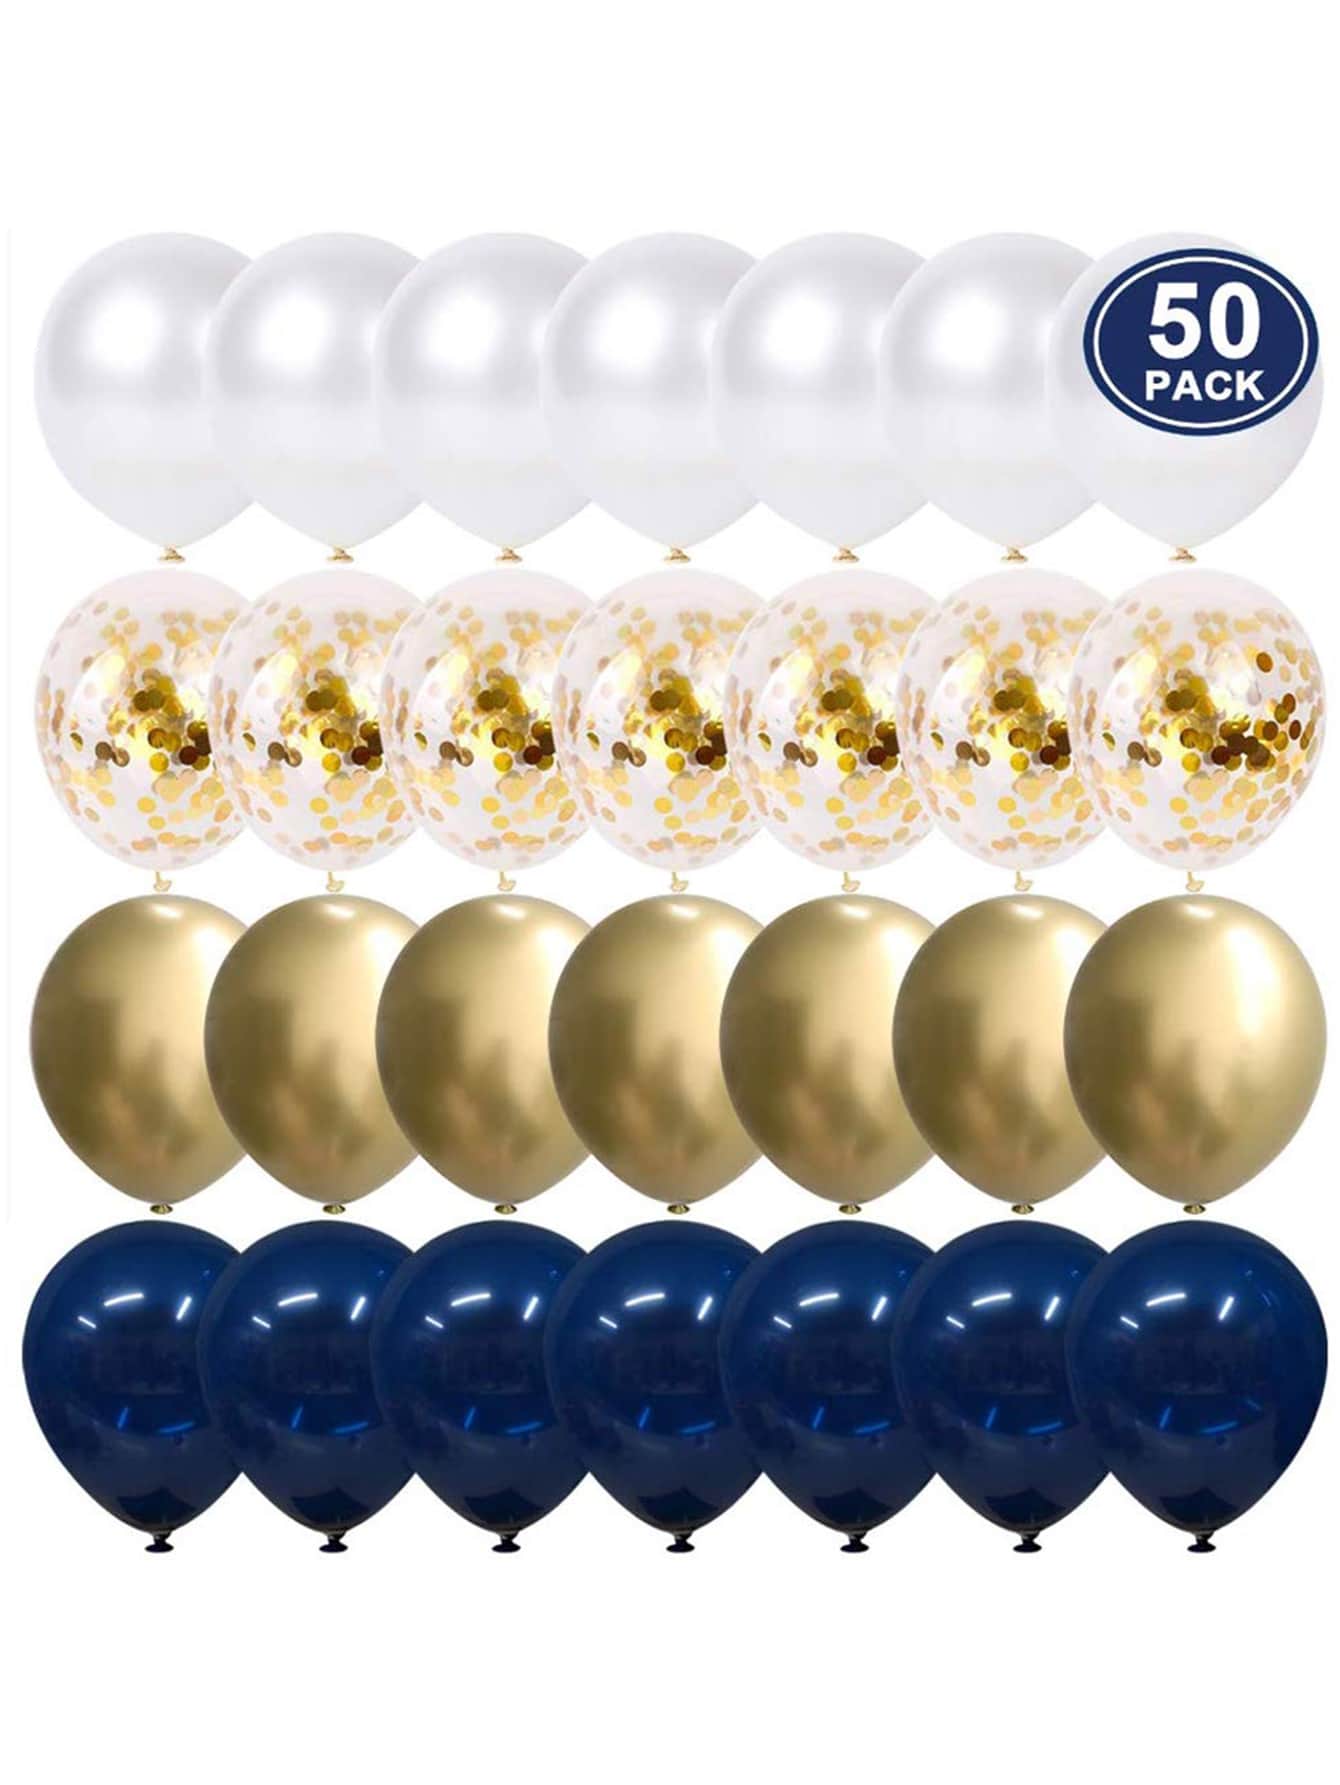 50pcs Decorative Balloon Set